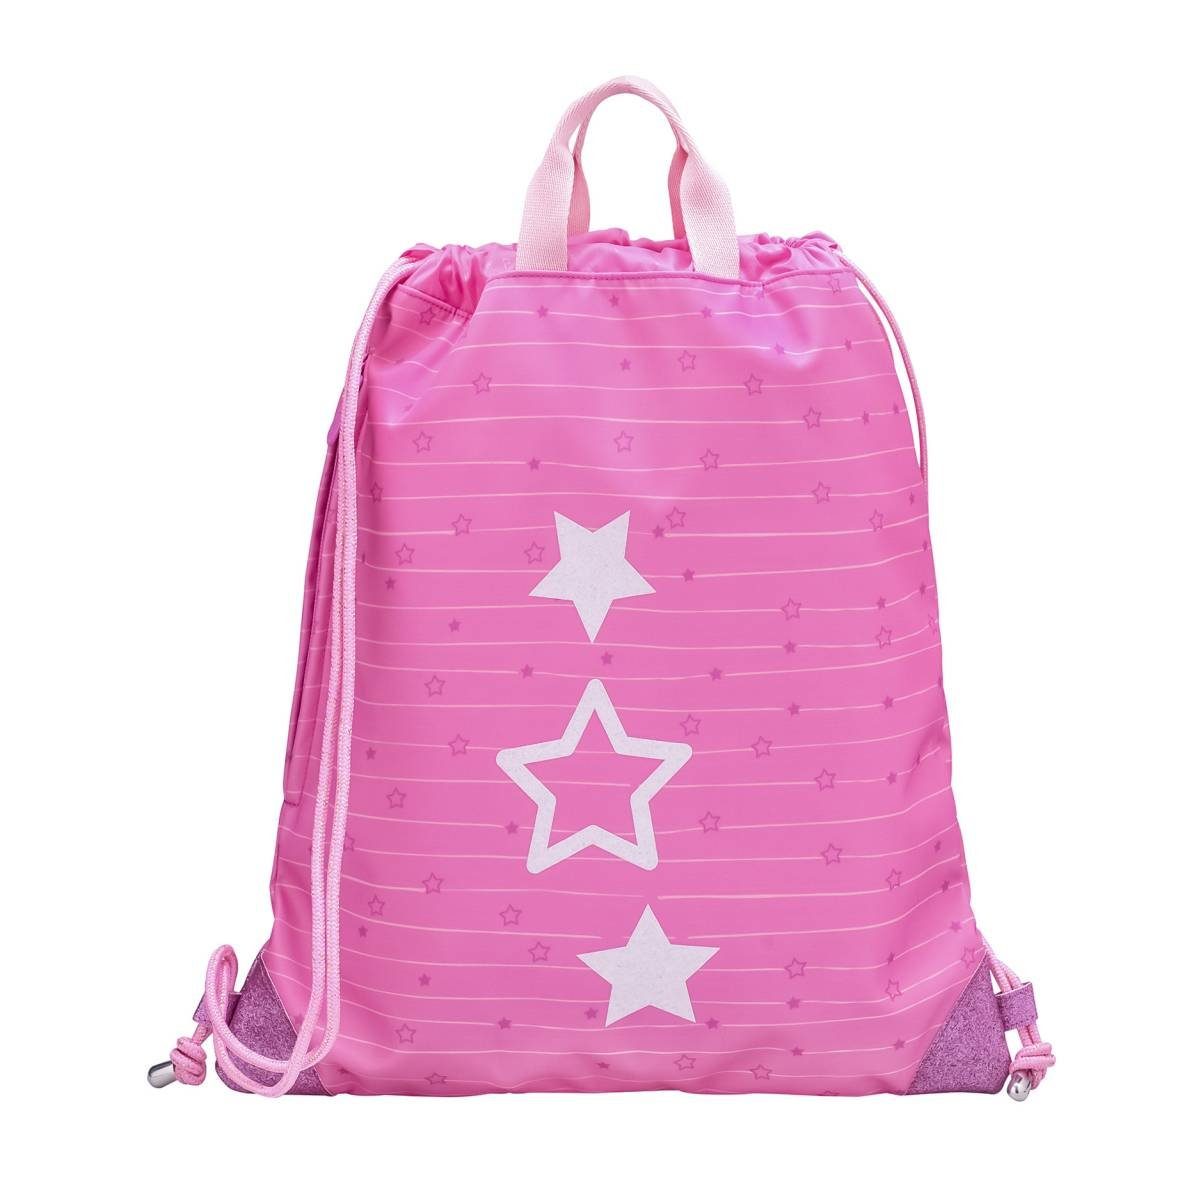 Belmil Sporttasche Premium, Turnbeutel, Schulsporttasche, Gym-Bag, für Mädchen Candy